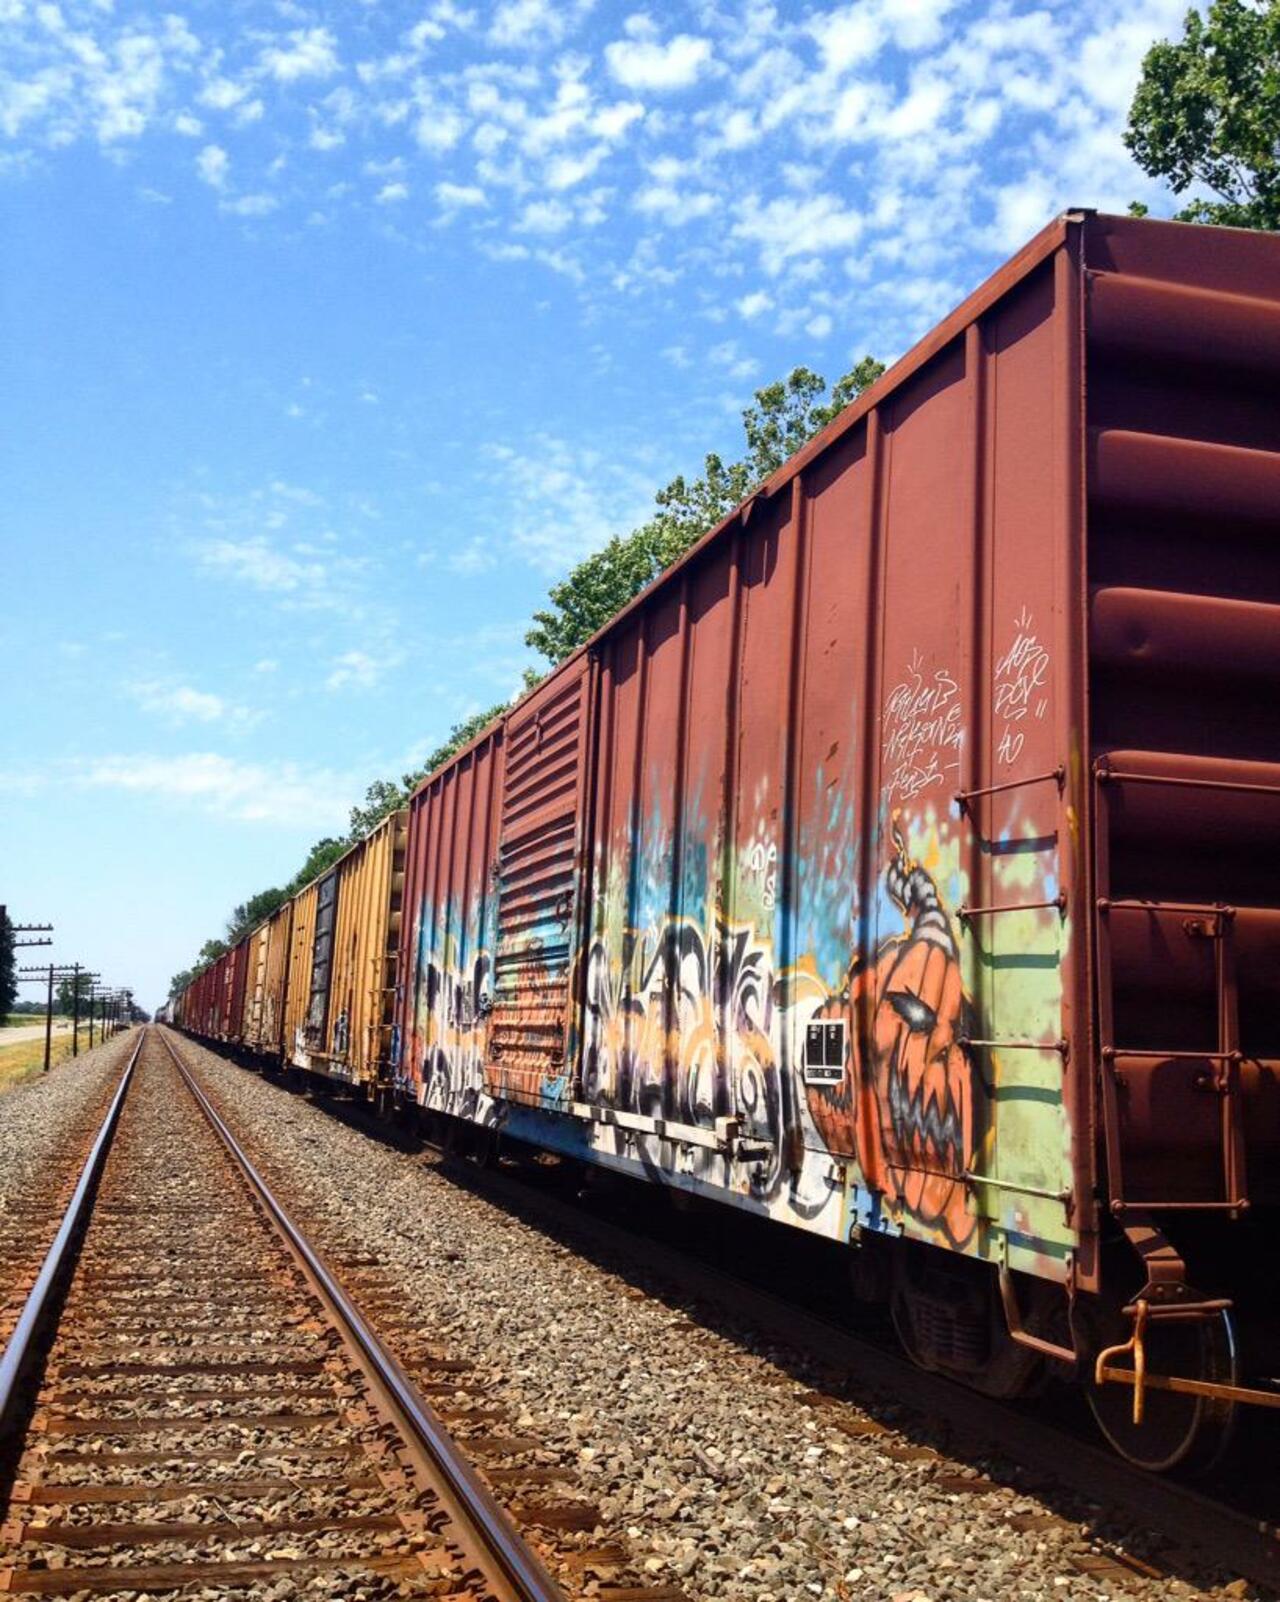 RT @punkrockgirlart: Jack

#graffiti #streetart #tag #train #urbex #punkrockgirlart http://t.co/nRrxvEOYxc